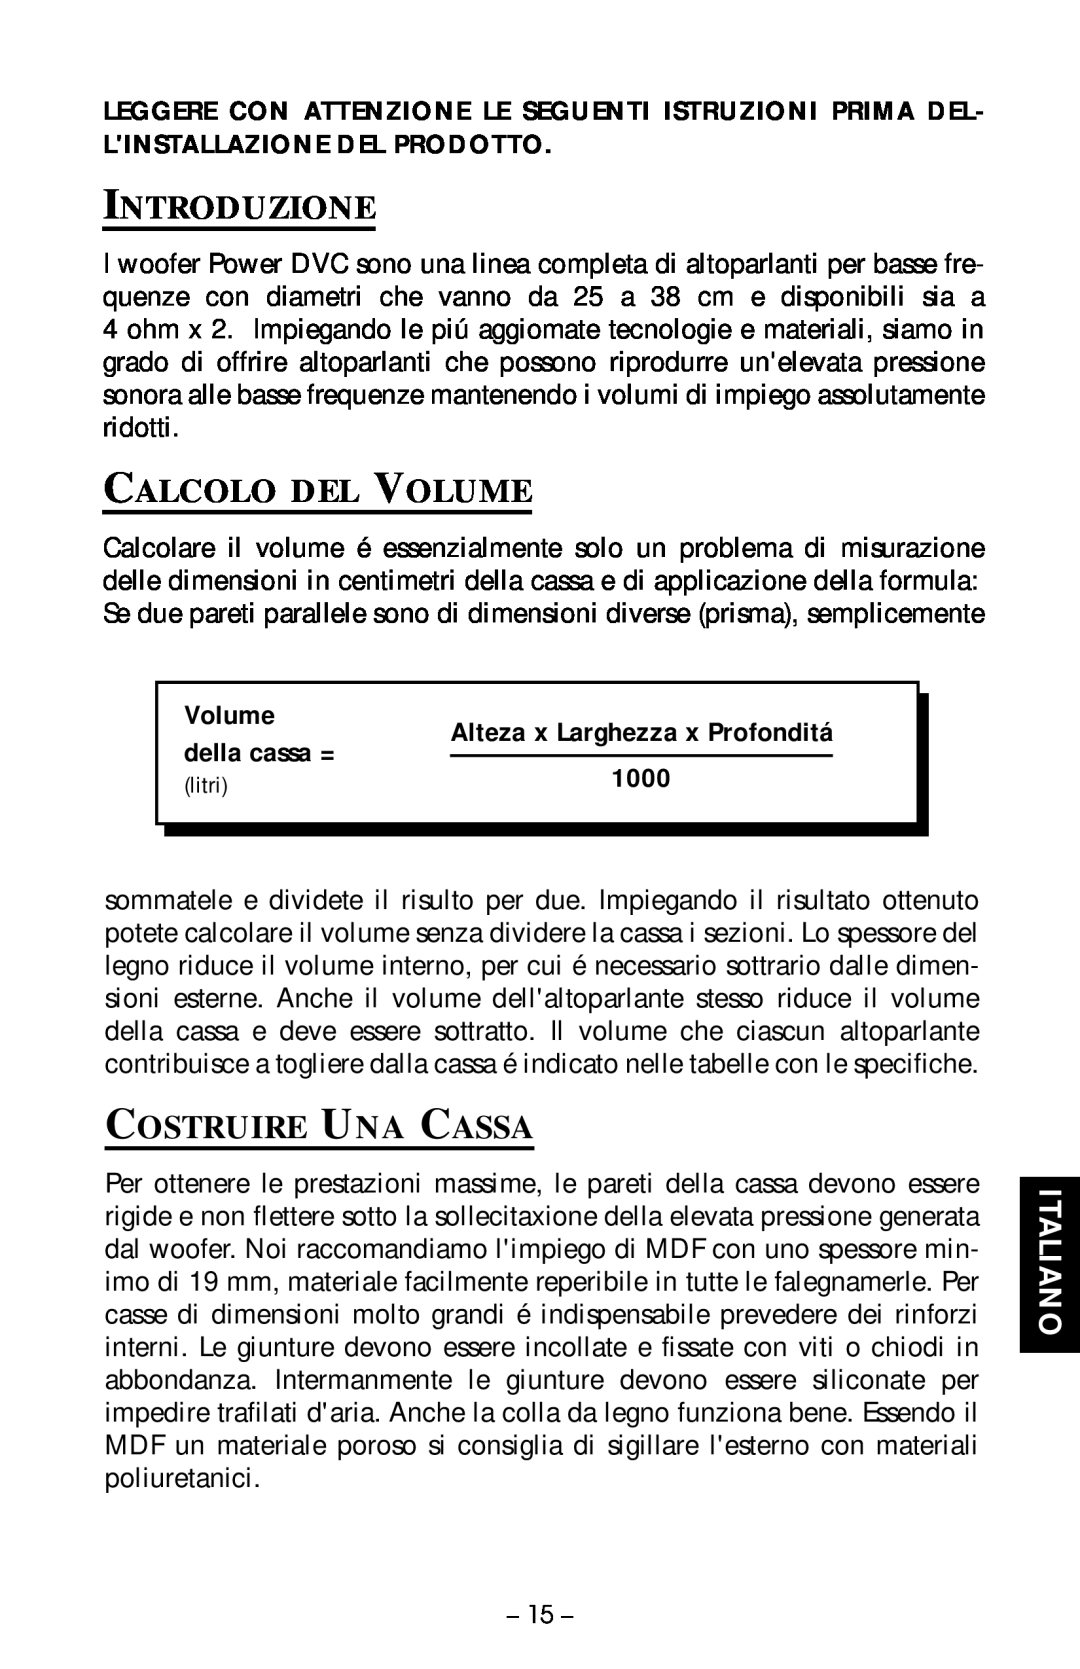 Rockford Fosgate RFD1210, RFR2215 Introduzione, Calcolo Del Volume, Costruire Una Cassa, Italiano, della cassa =, 1000 